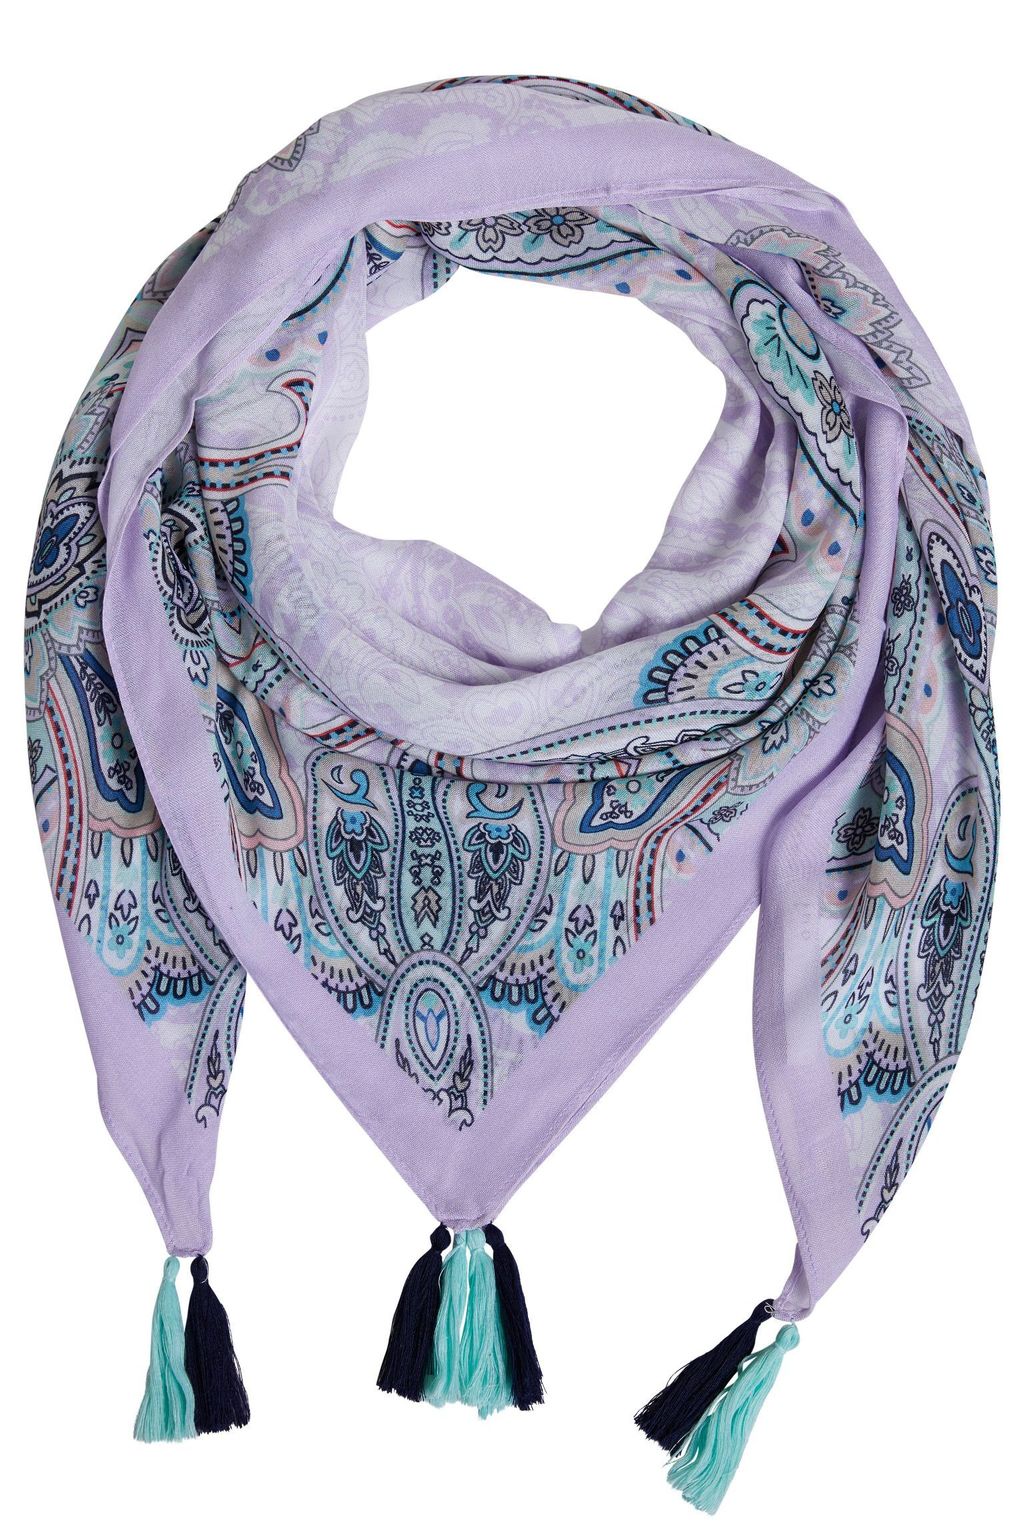 德國Oui-粉紫變形蟲印花流蘇圍巾– 虹銨歐洲時尚